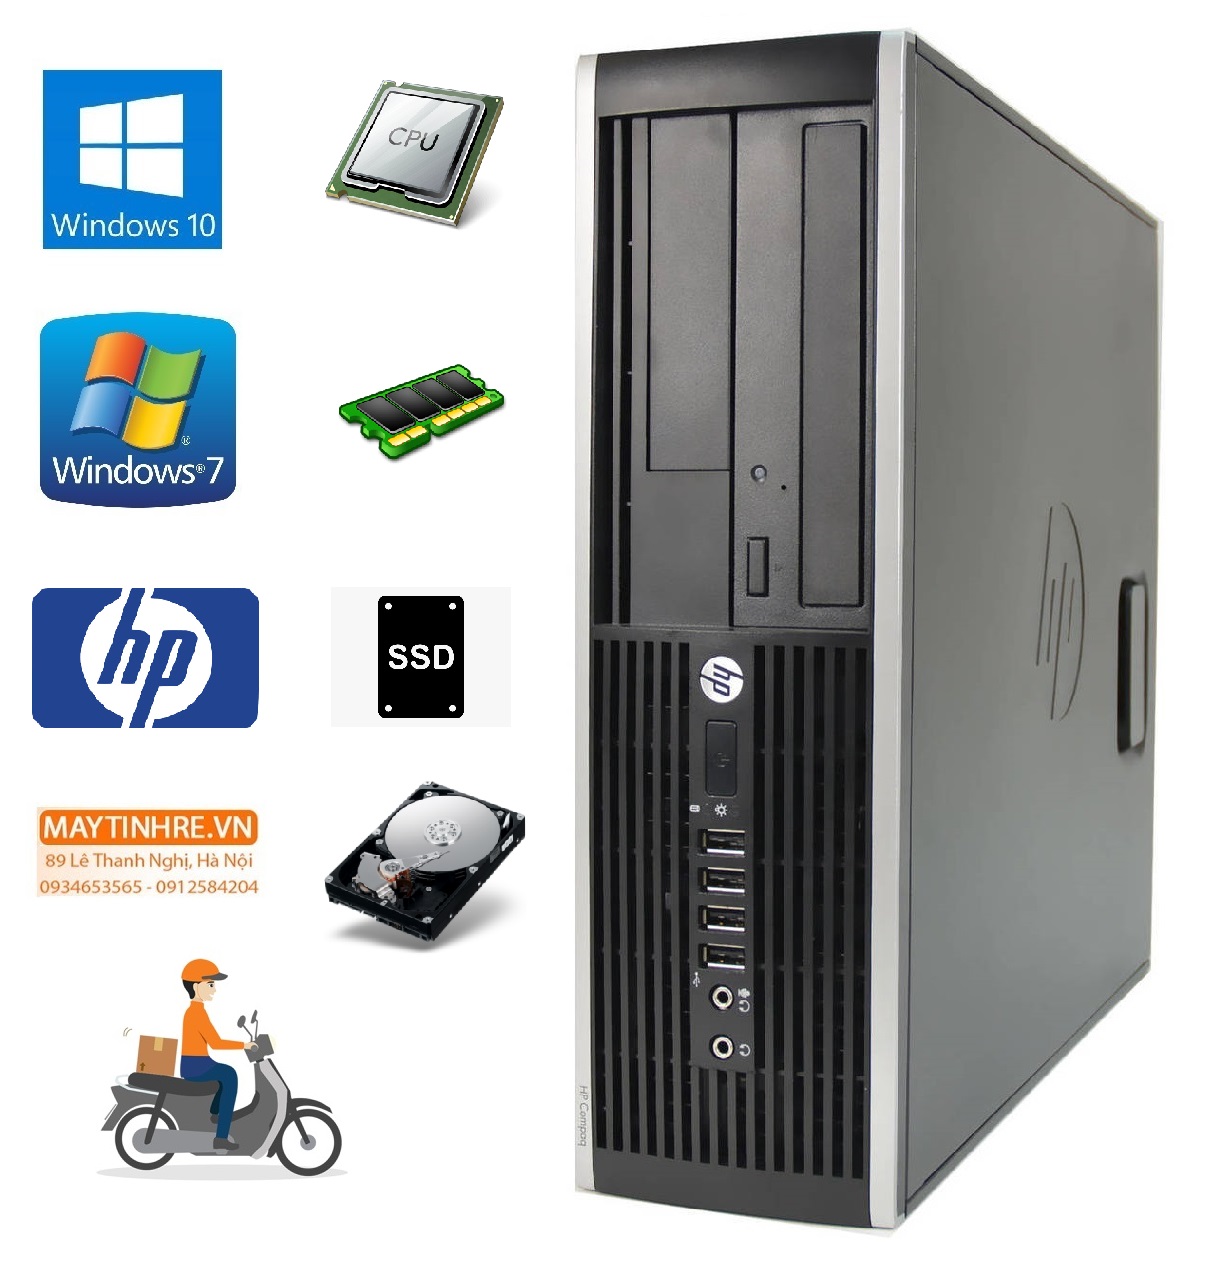 Máy tính đồng bộ HP Compaq 6200 Intel G620 RAM 2GB HDD 160GB + Tặng kèm bộ bàn phím chuột Gipco